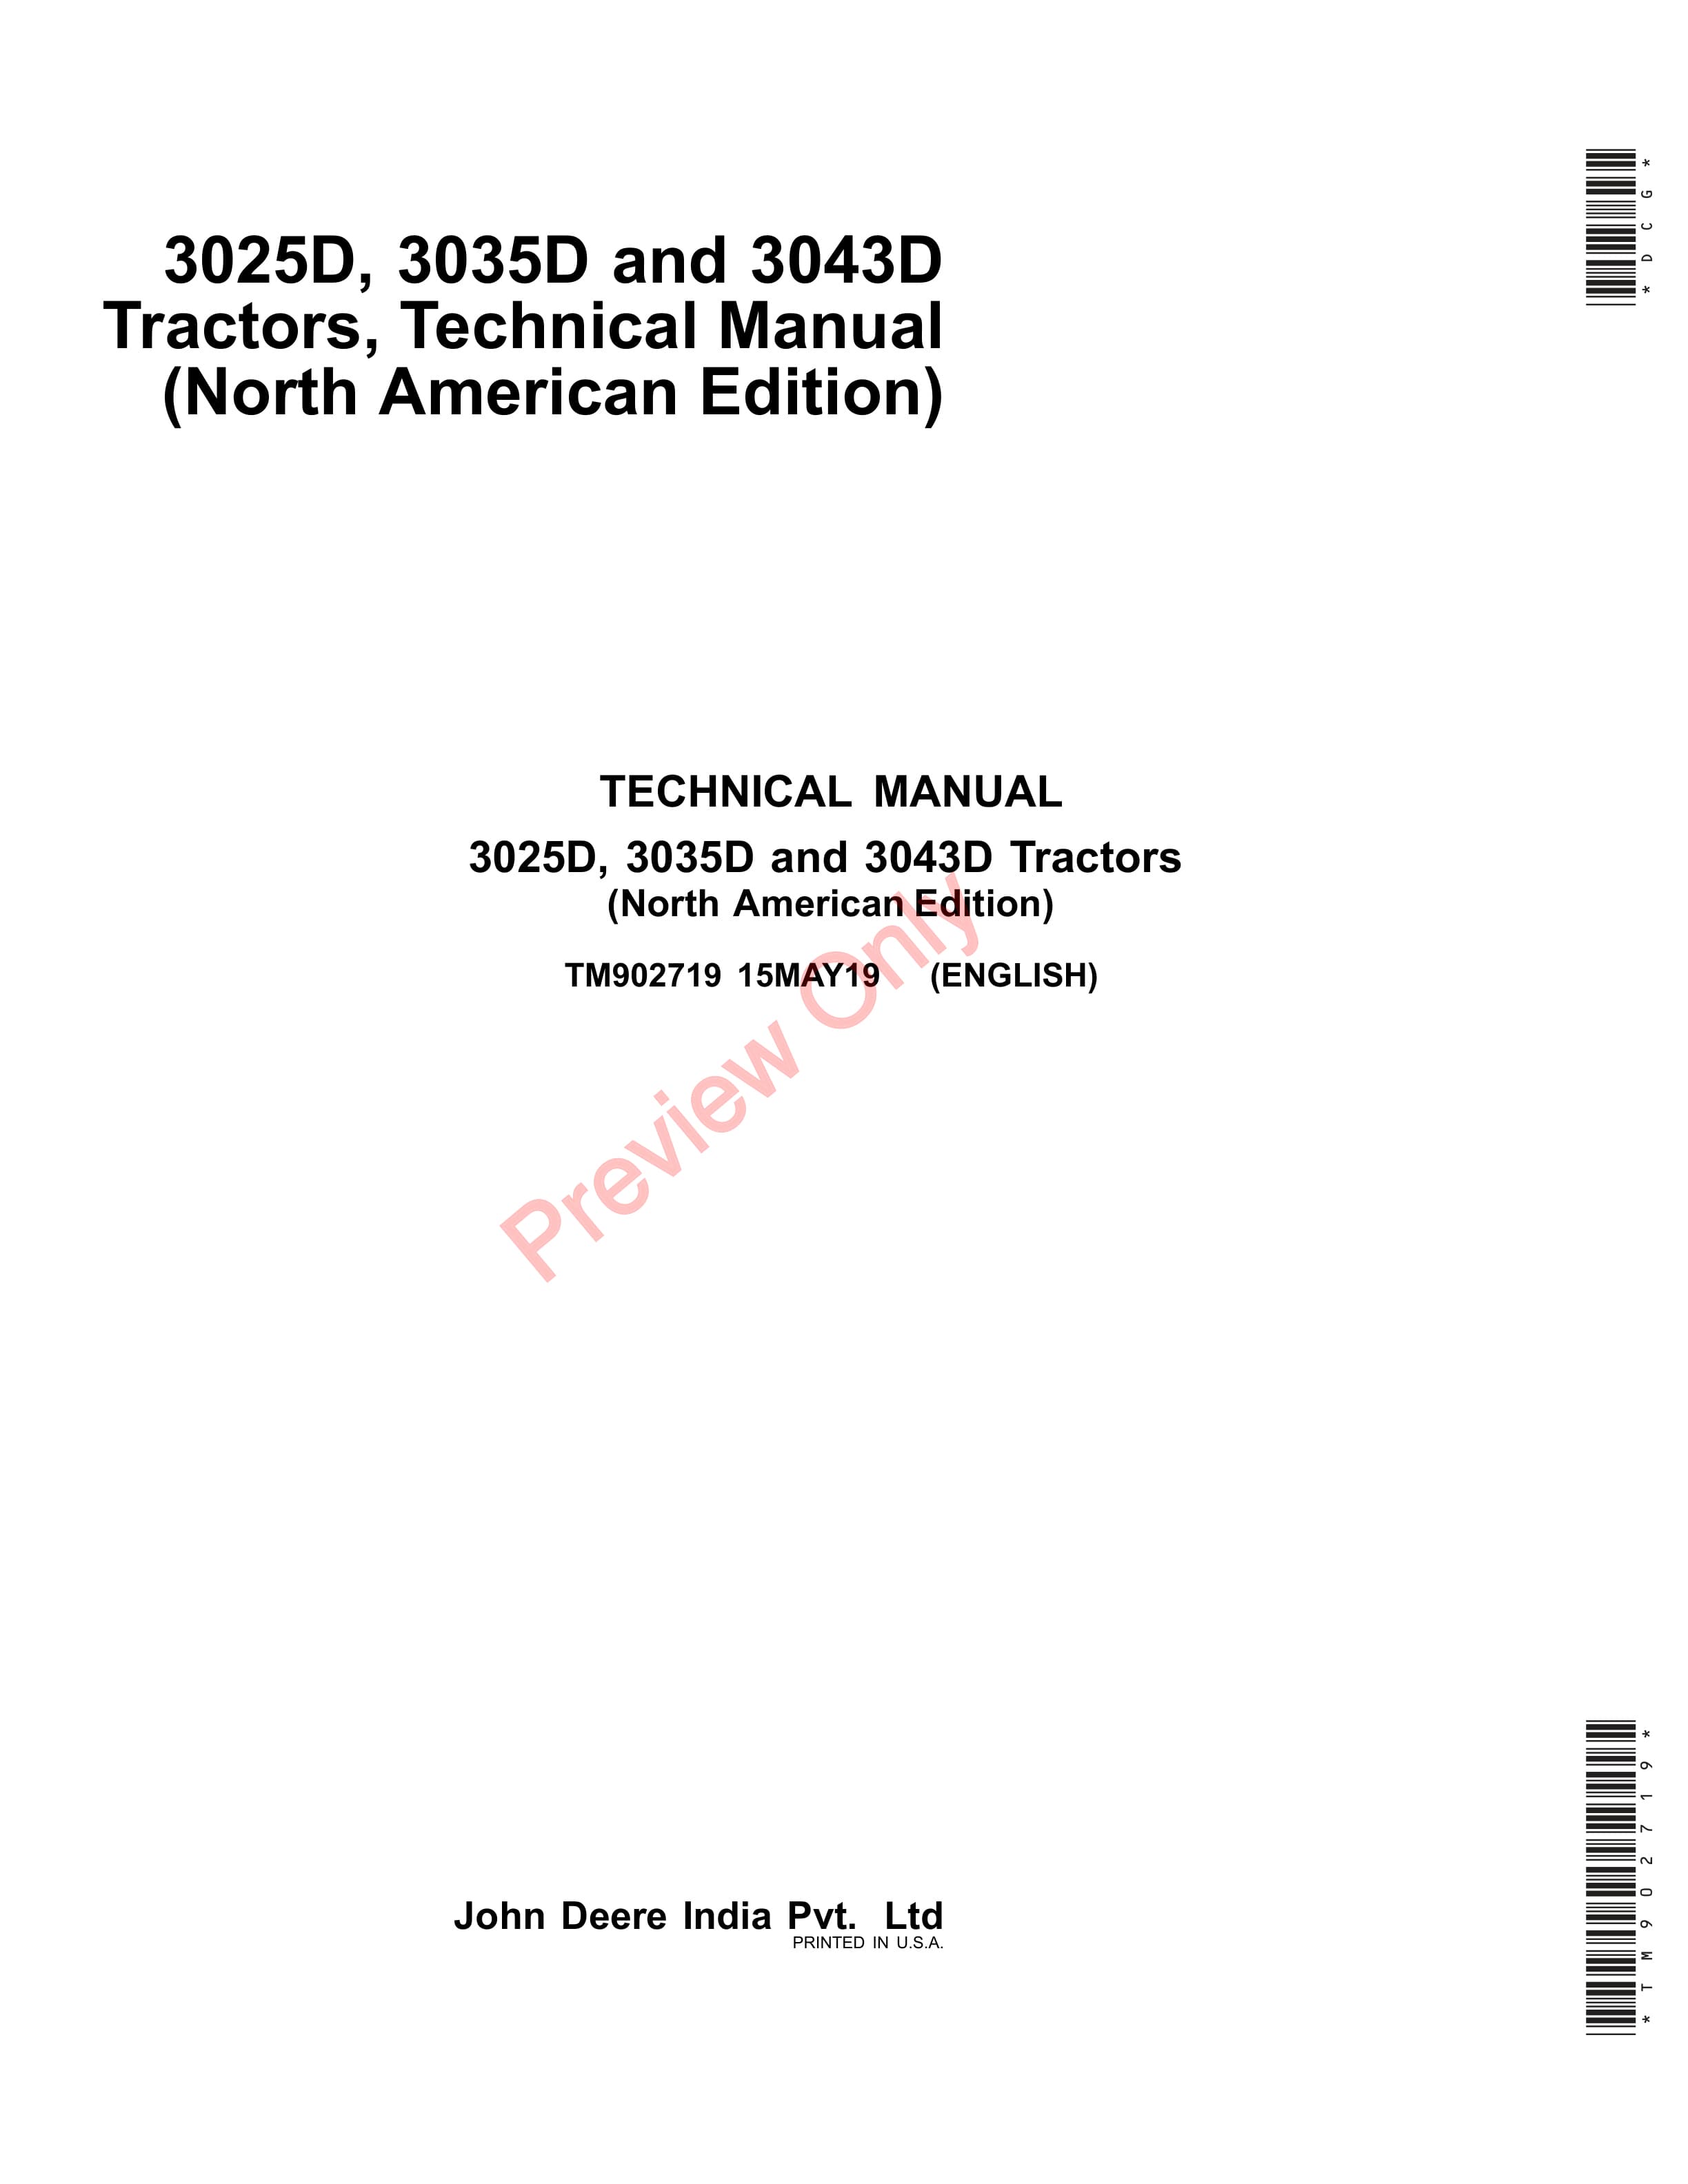 John Deere 3025D 3035D and 3043D Tractors Technical Manual TM902719 15MAY19 1